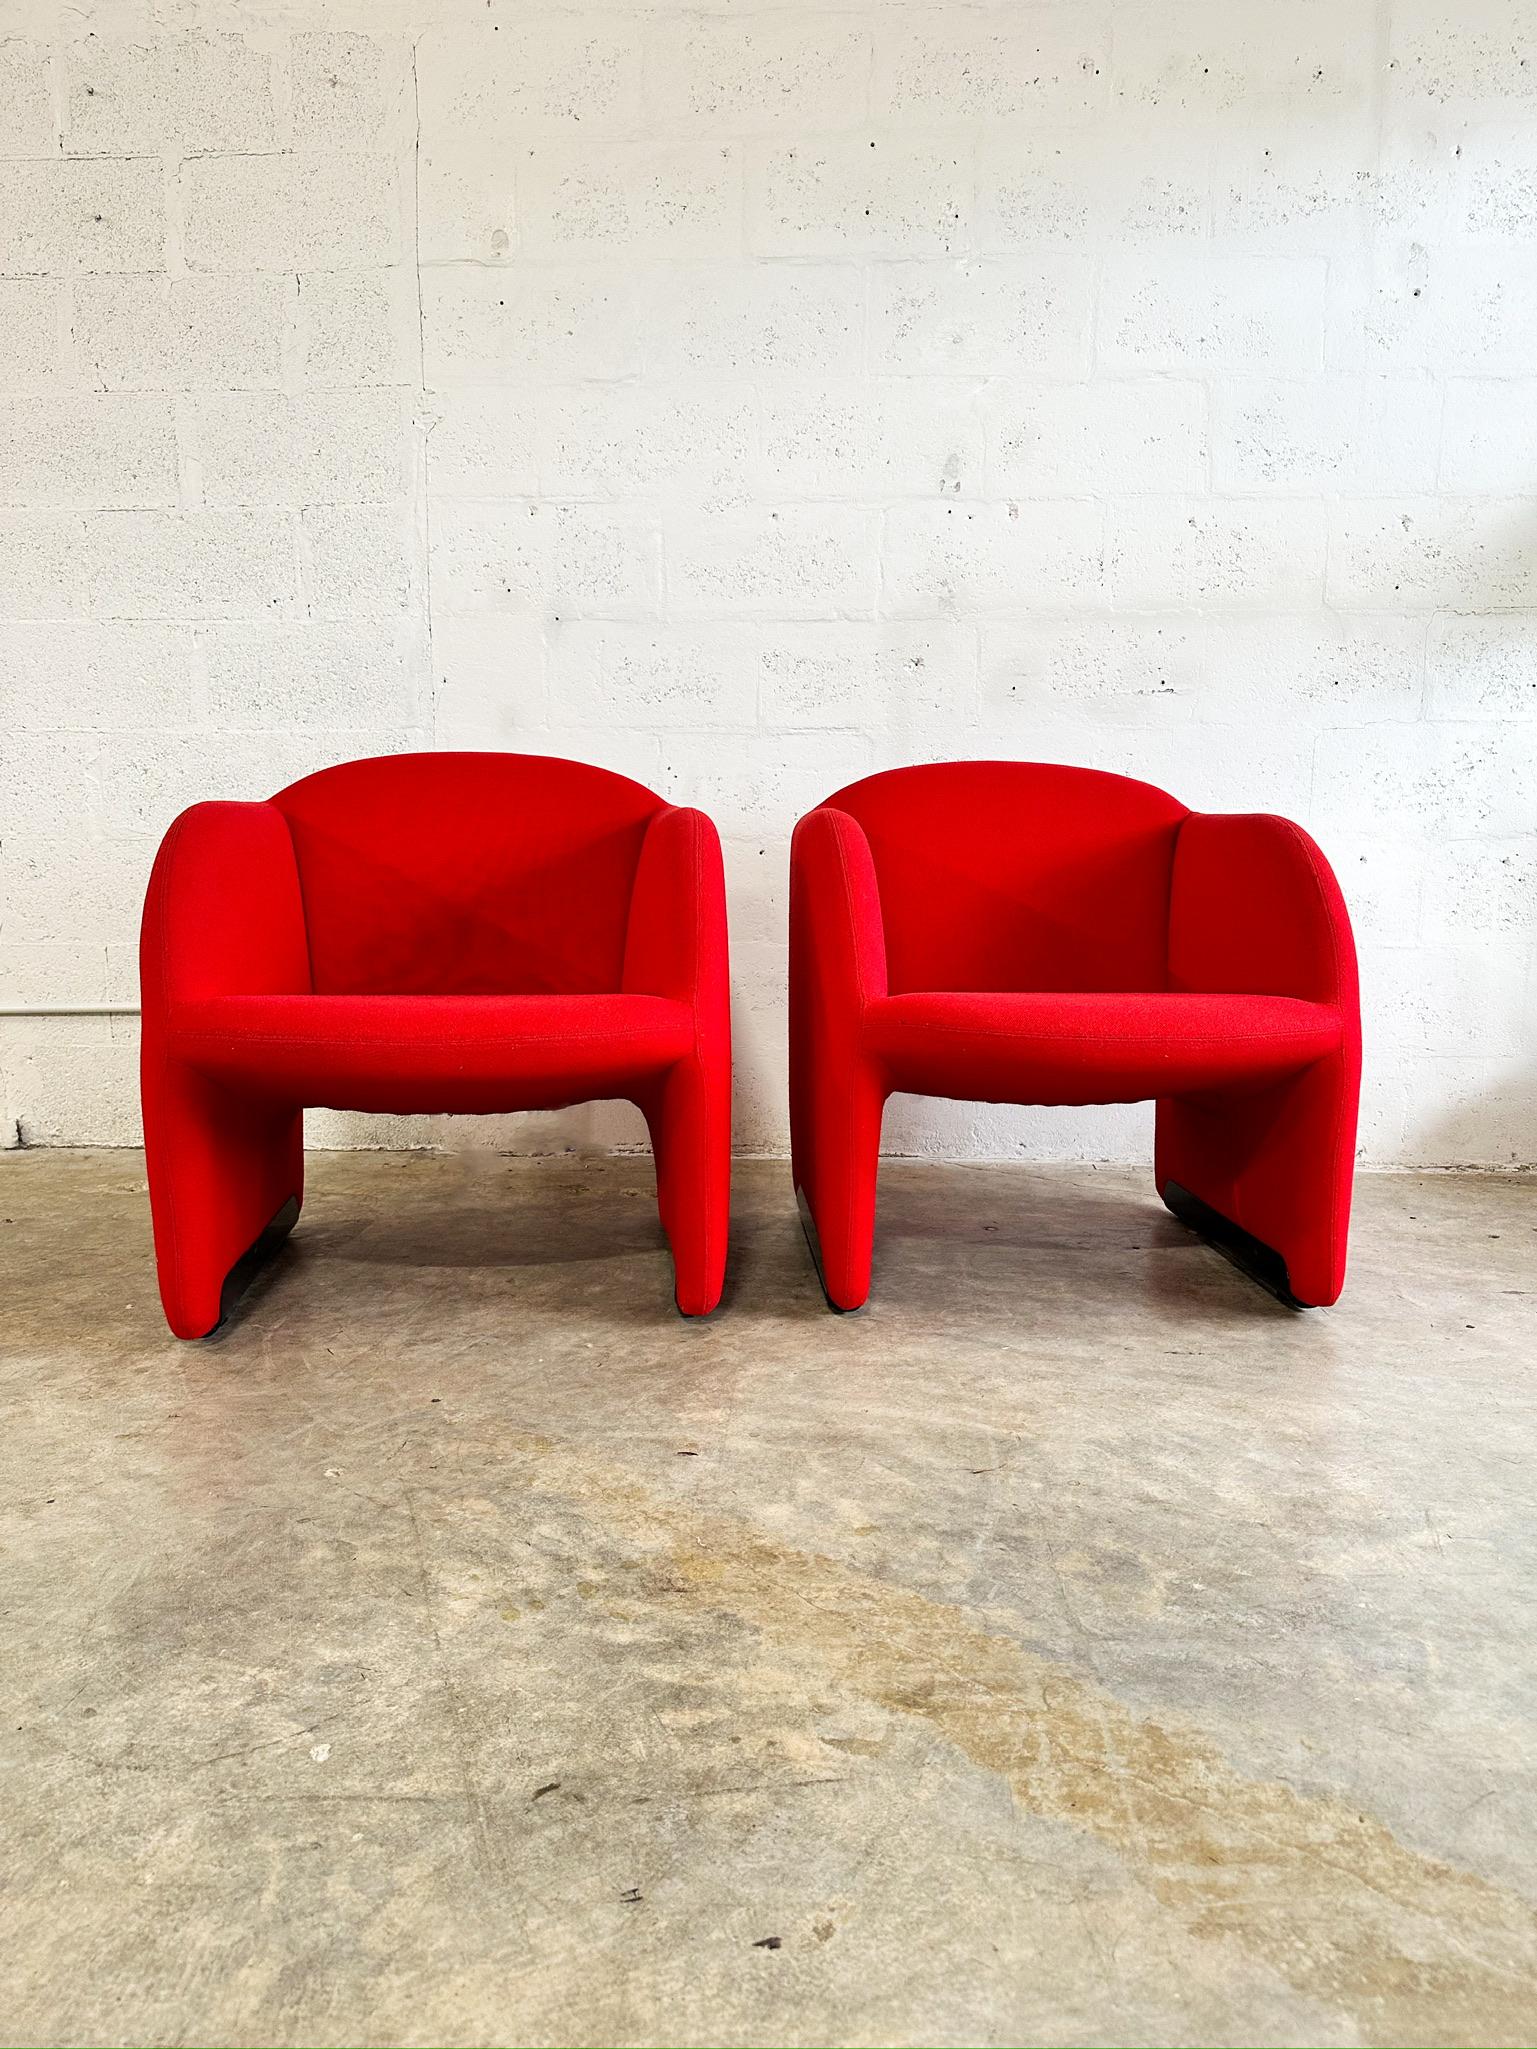 Paar Artifort Lounge Chairs, entworfen von dem französischen Designer Pierre Paulin. Etikettiert. Original Stoff. 28b 29d 29h 17s